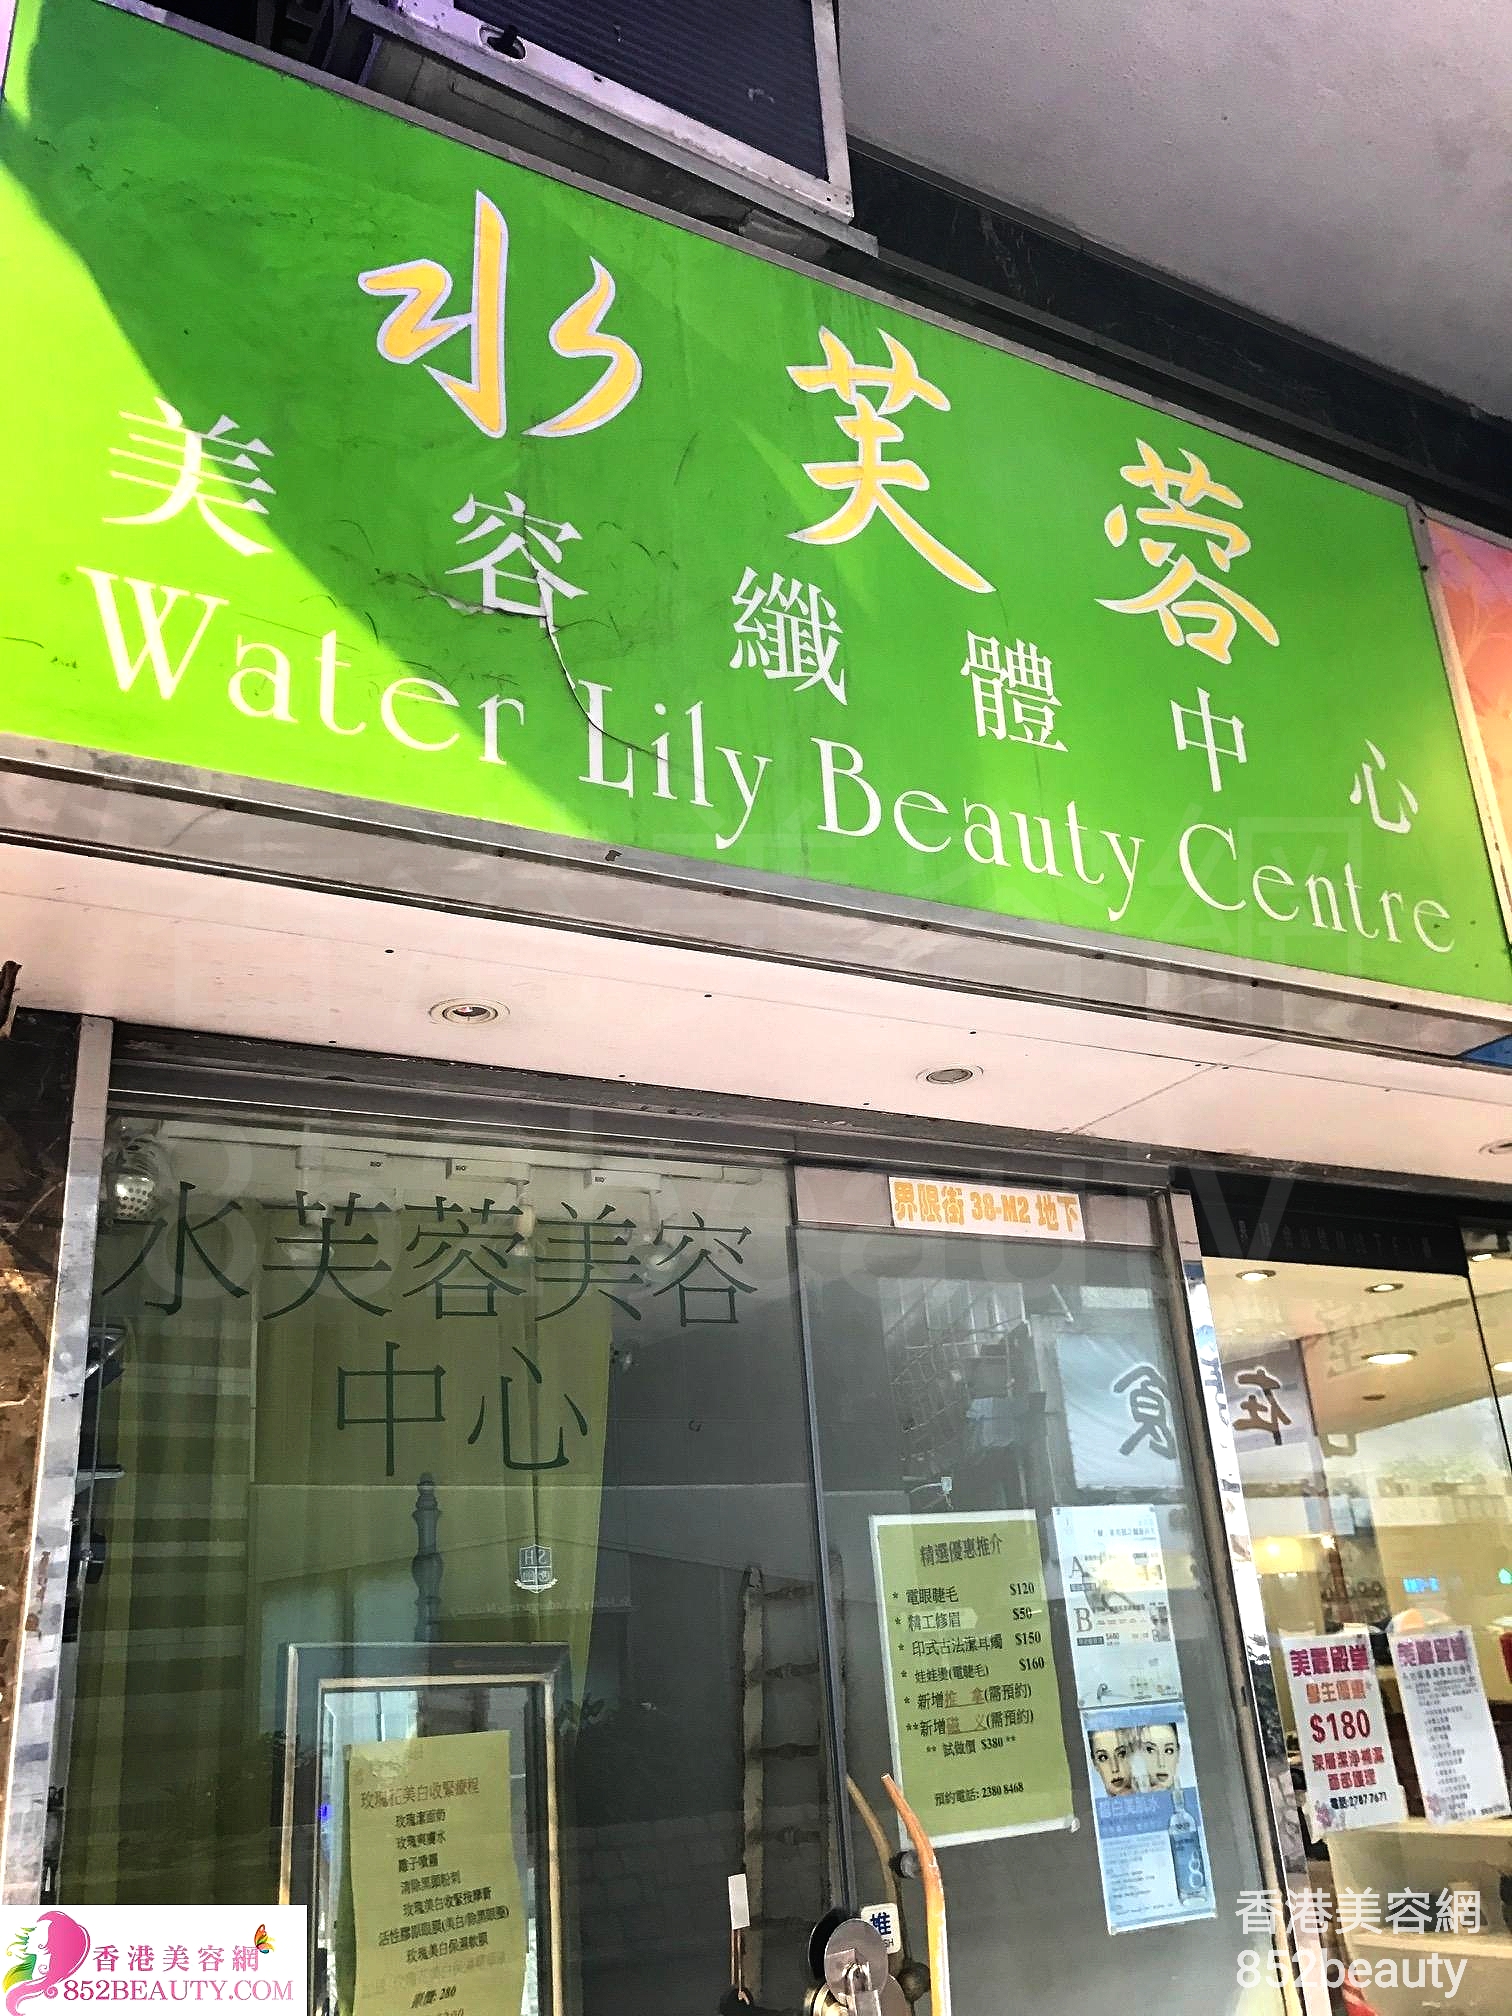 香港美容網 Hong Kong Beauty Salon 美容院 / 美容師: 水芺蓉 美容纖體中心 Water Lily Beauty Centre